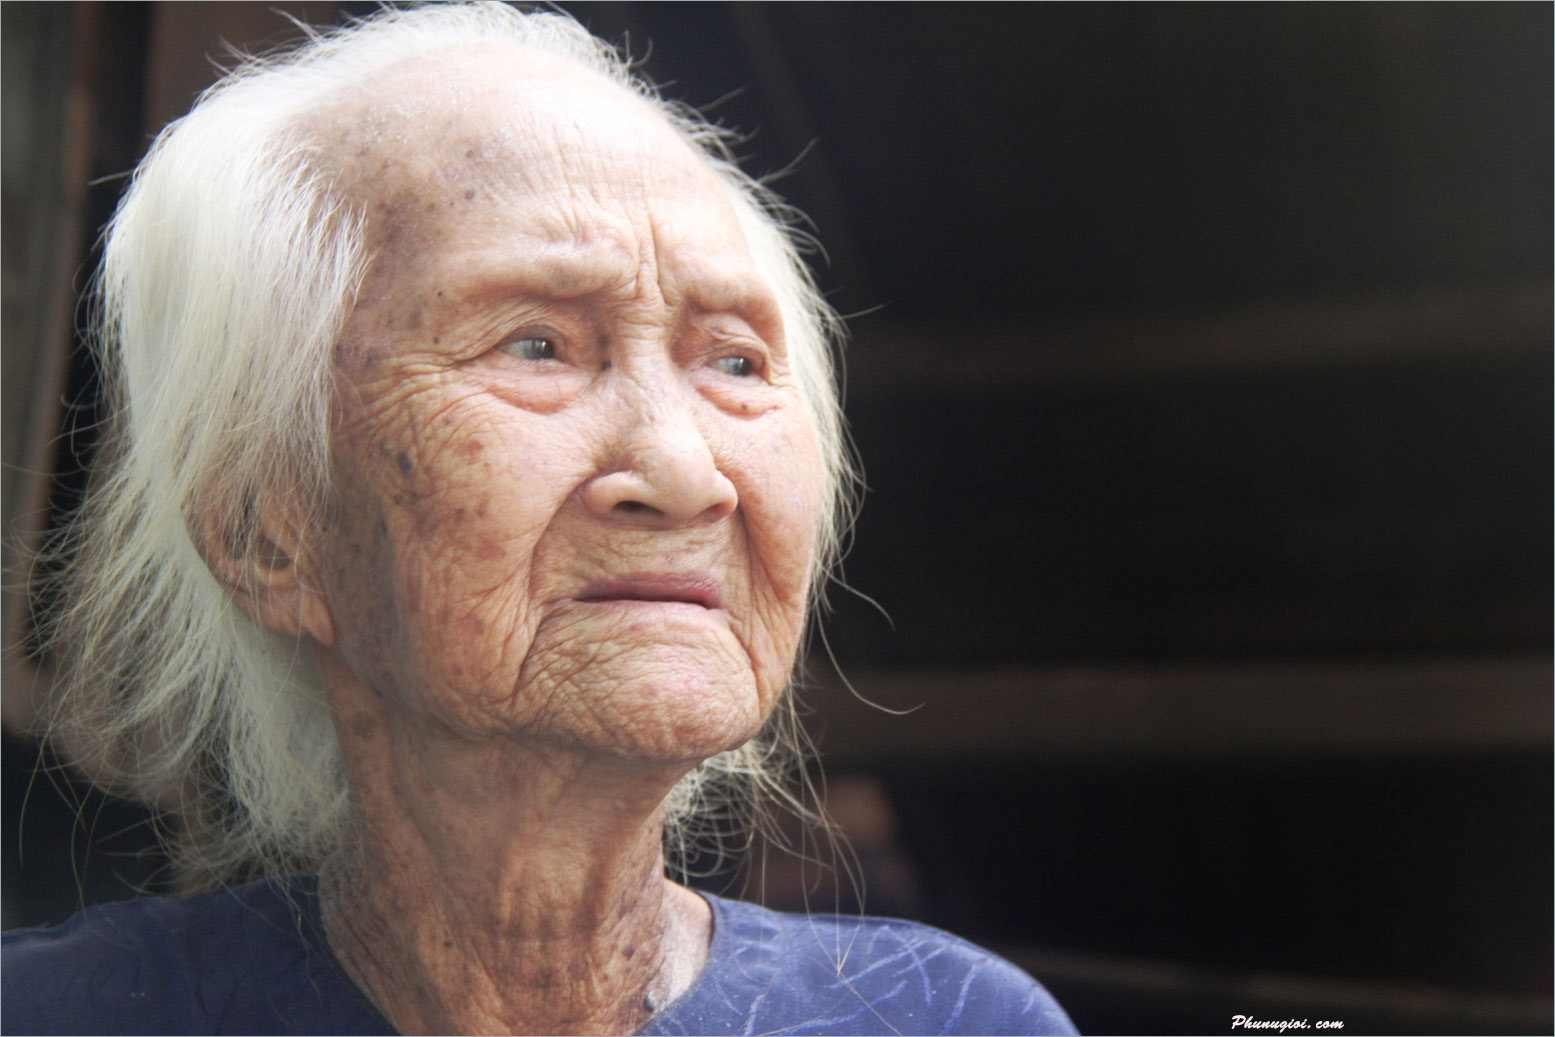 59+ Ảnh Mẹ Già Tần Tảo, Vất Vả, Nhìn Cảm Động Rơi Nước Mắt